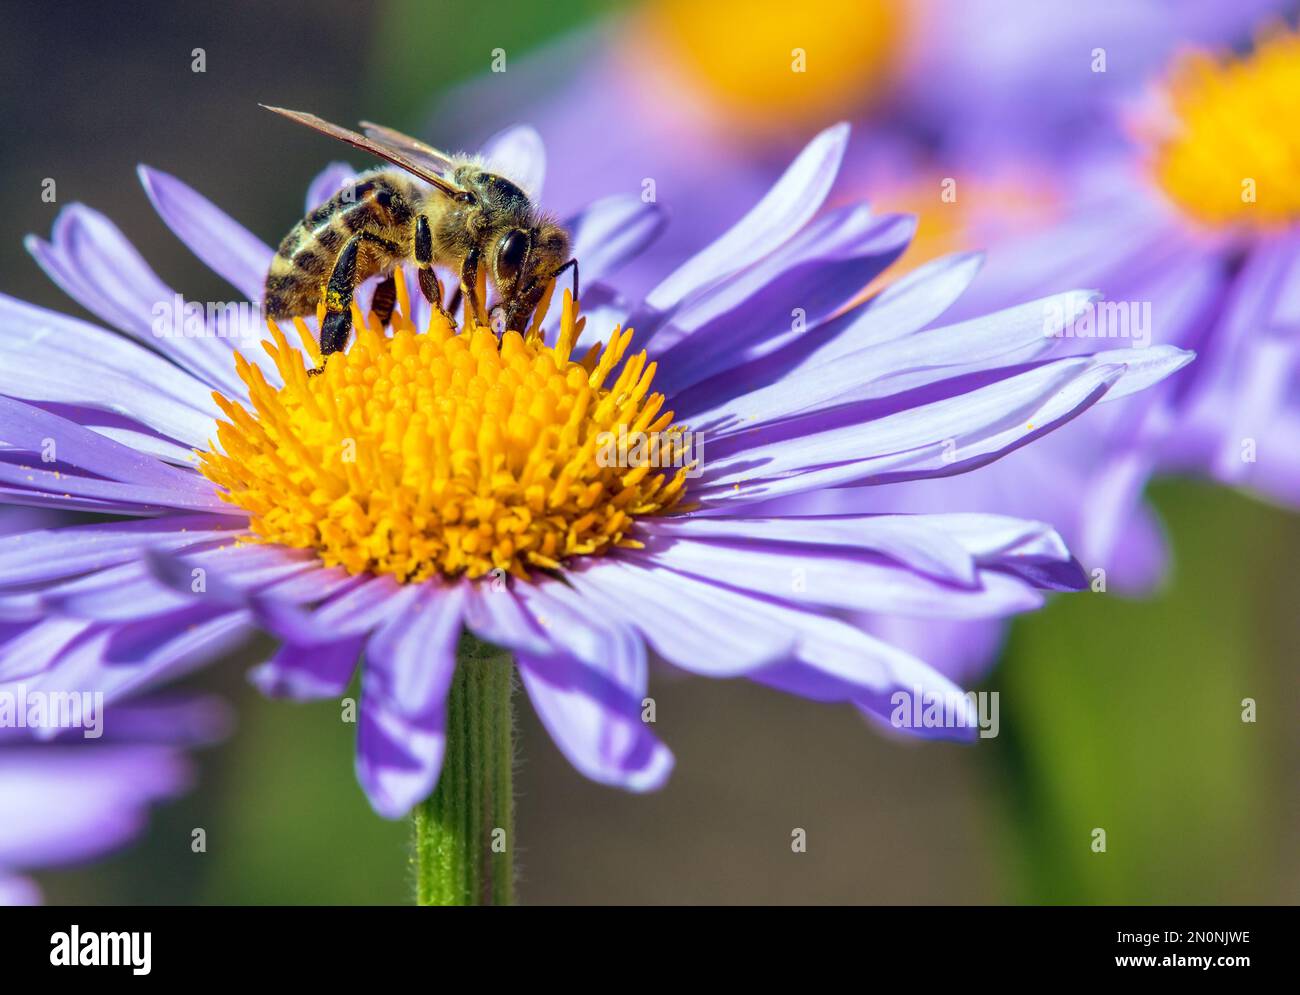 Biene oder Honigbiene in Latein APIs Mellifera, europäische oder westliche Honigbiene, die auf der blau-gelb-violetten oder violetten Blume sitzt Stockfoto